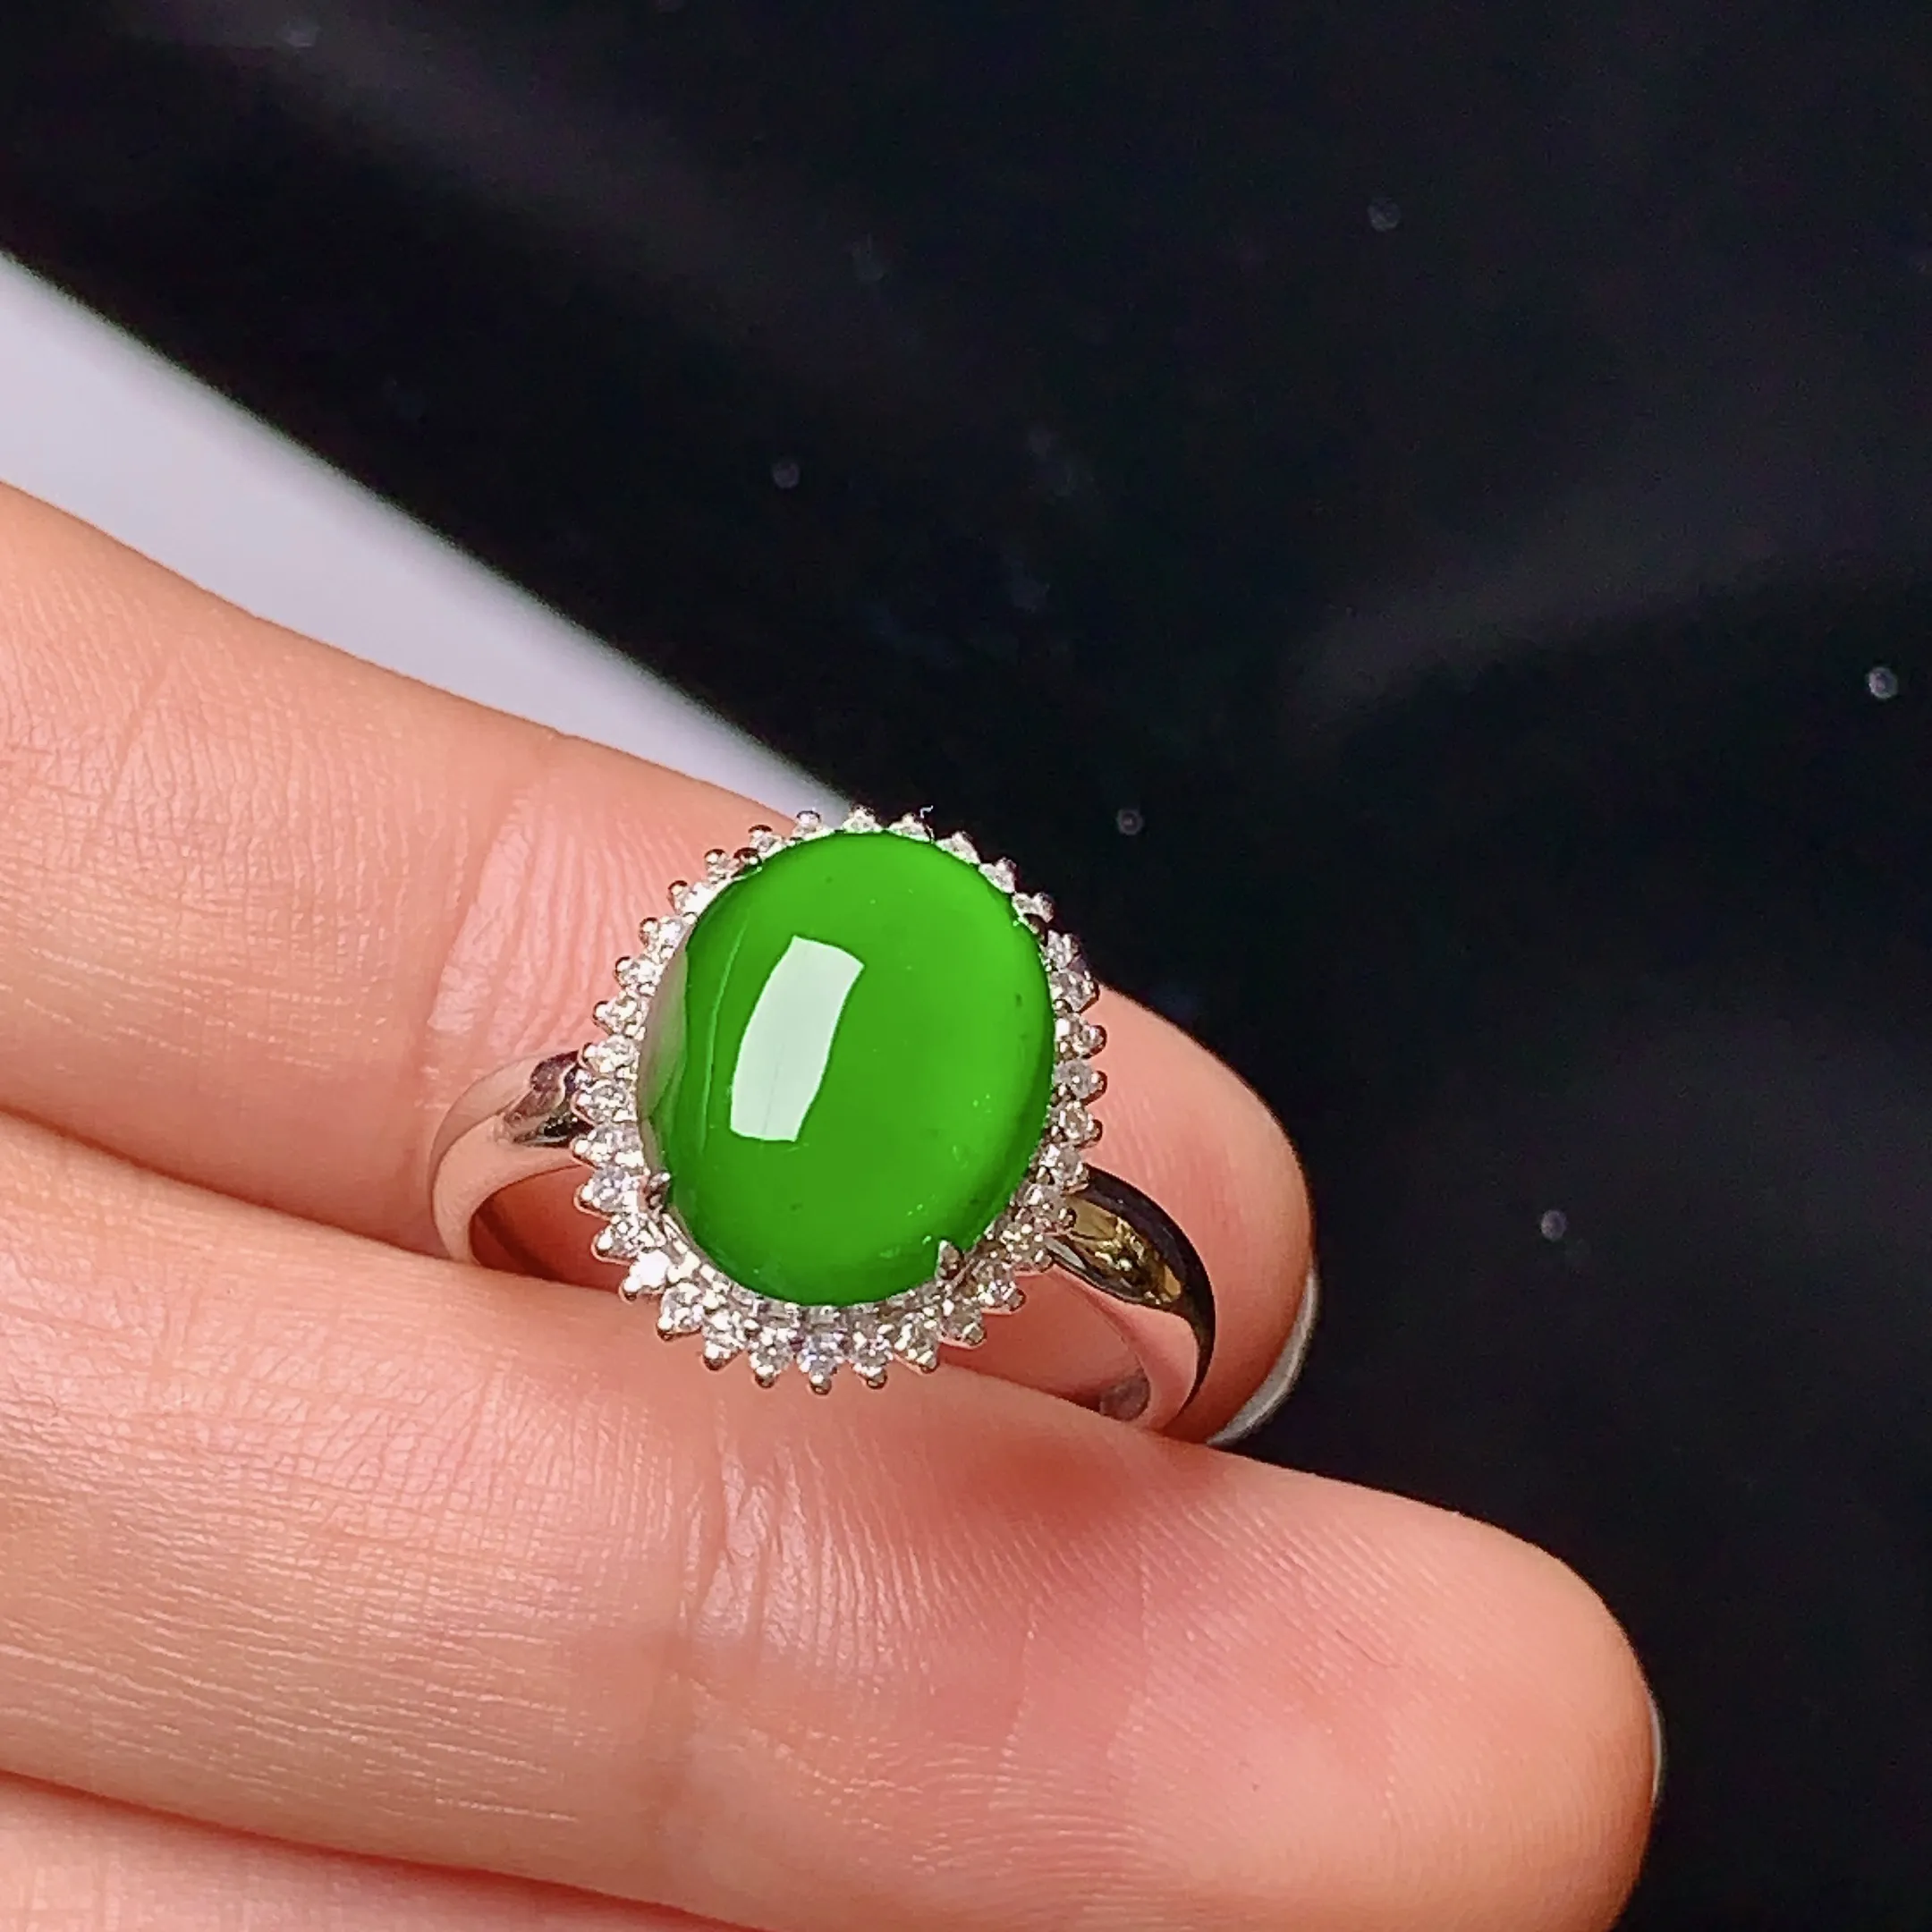 18k金钻镶嵌满绿蛋面戒指 玉质细腻 色泽艳丽 款式新颖 圈口1 4 整体尺寸14.8*12.1*8